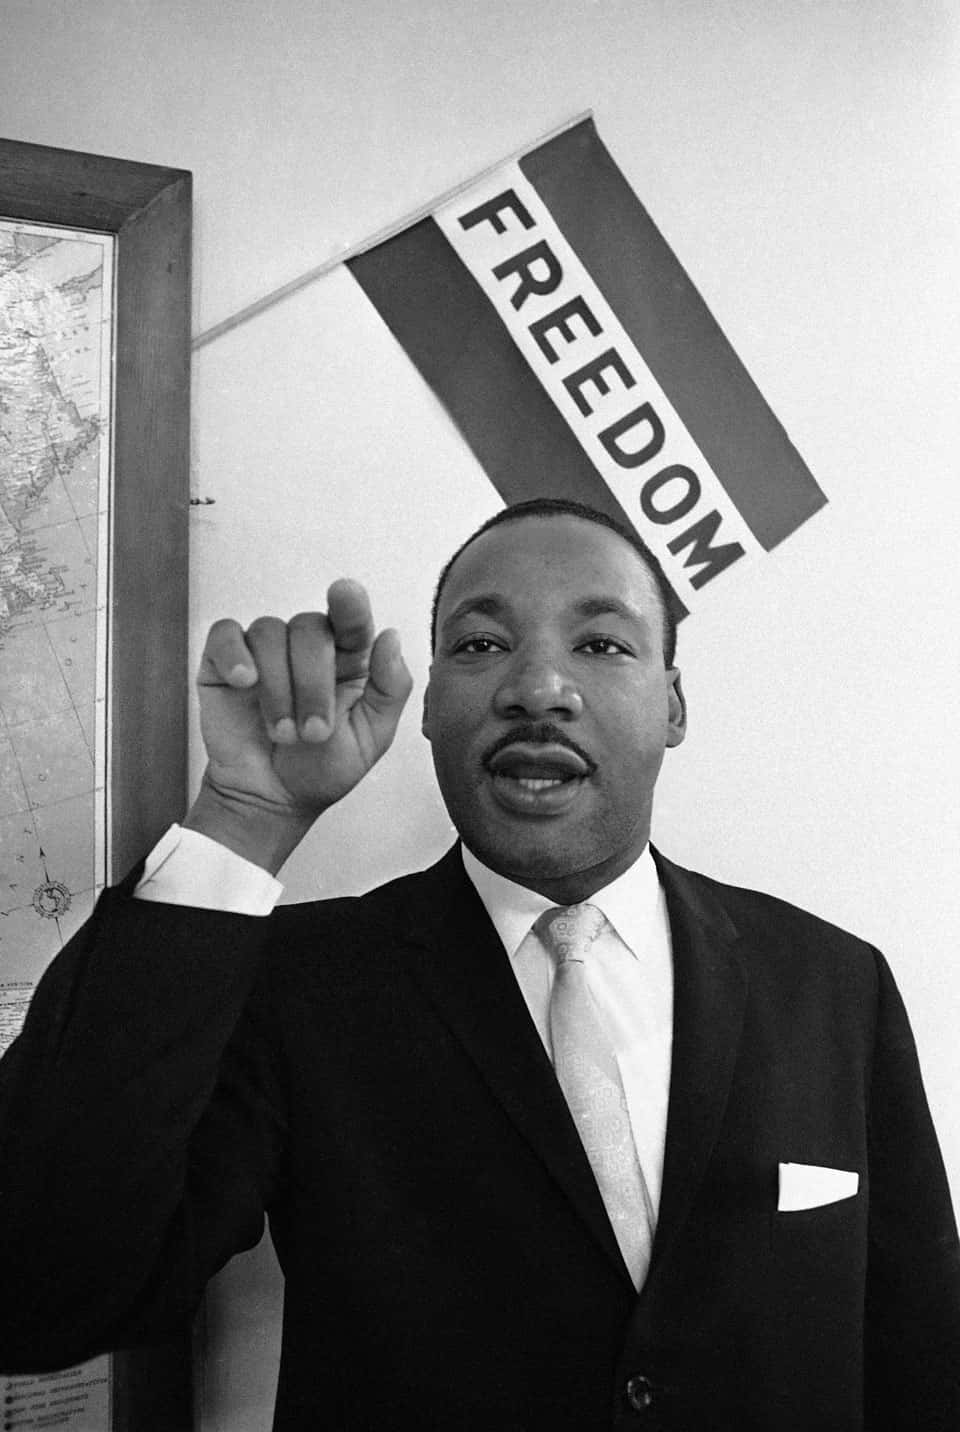 Den seneste civilrettighedsaktivist Martin Luther King Jr. kæmper for lige og retfærdighed i Amerika